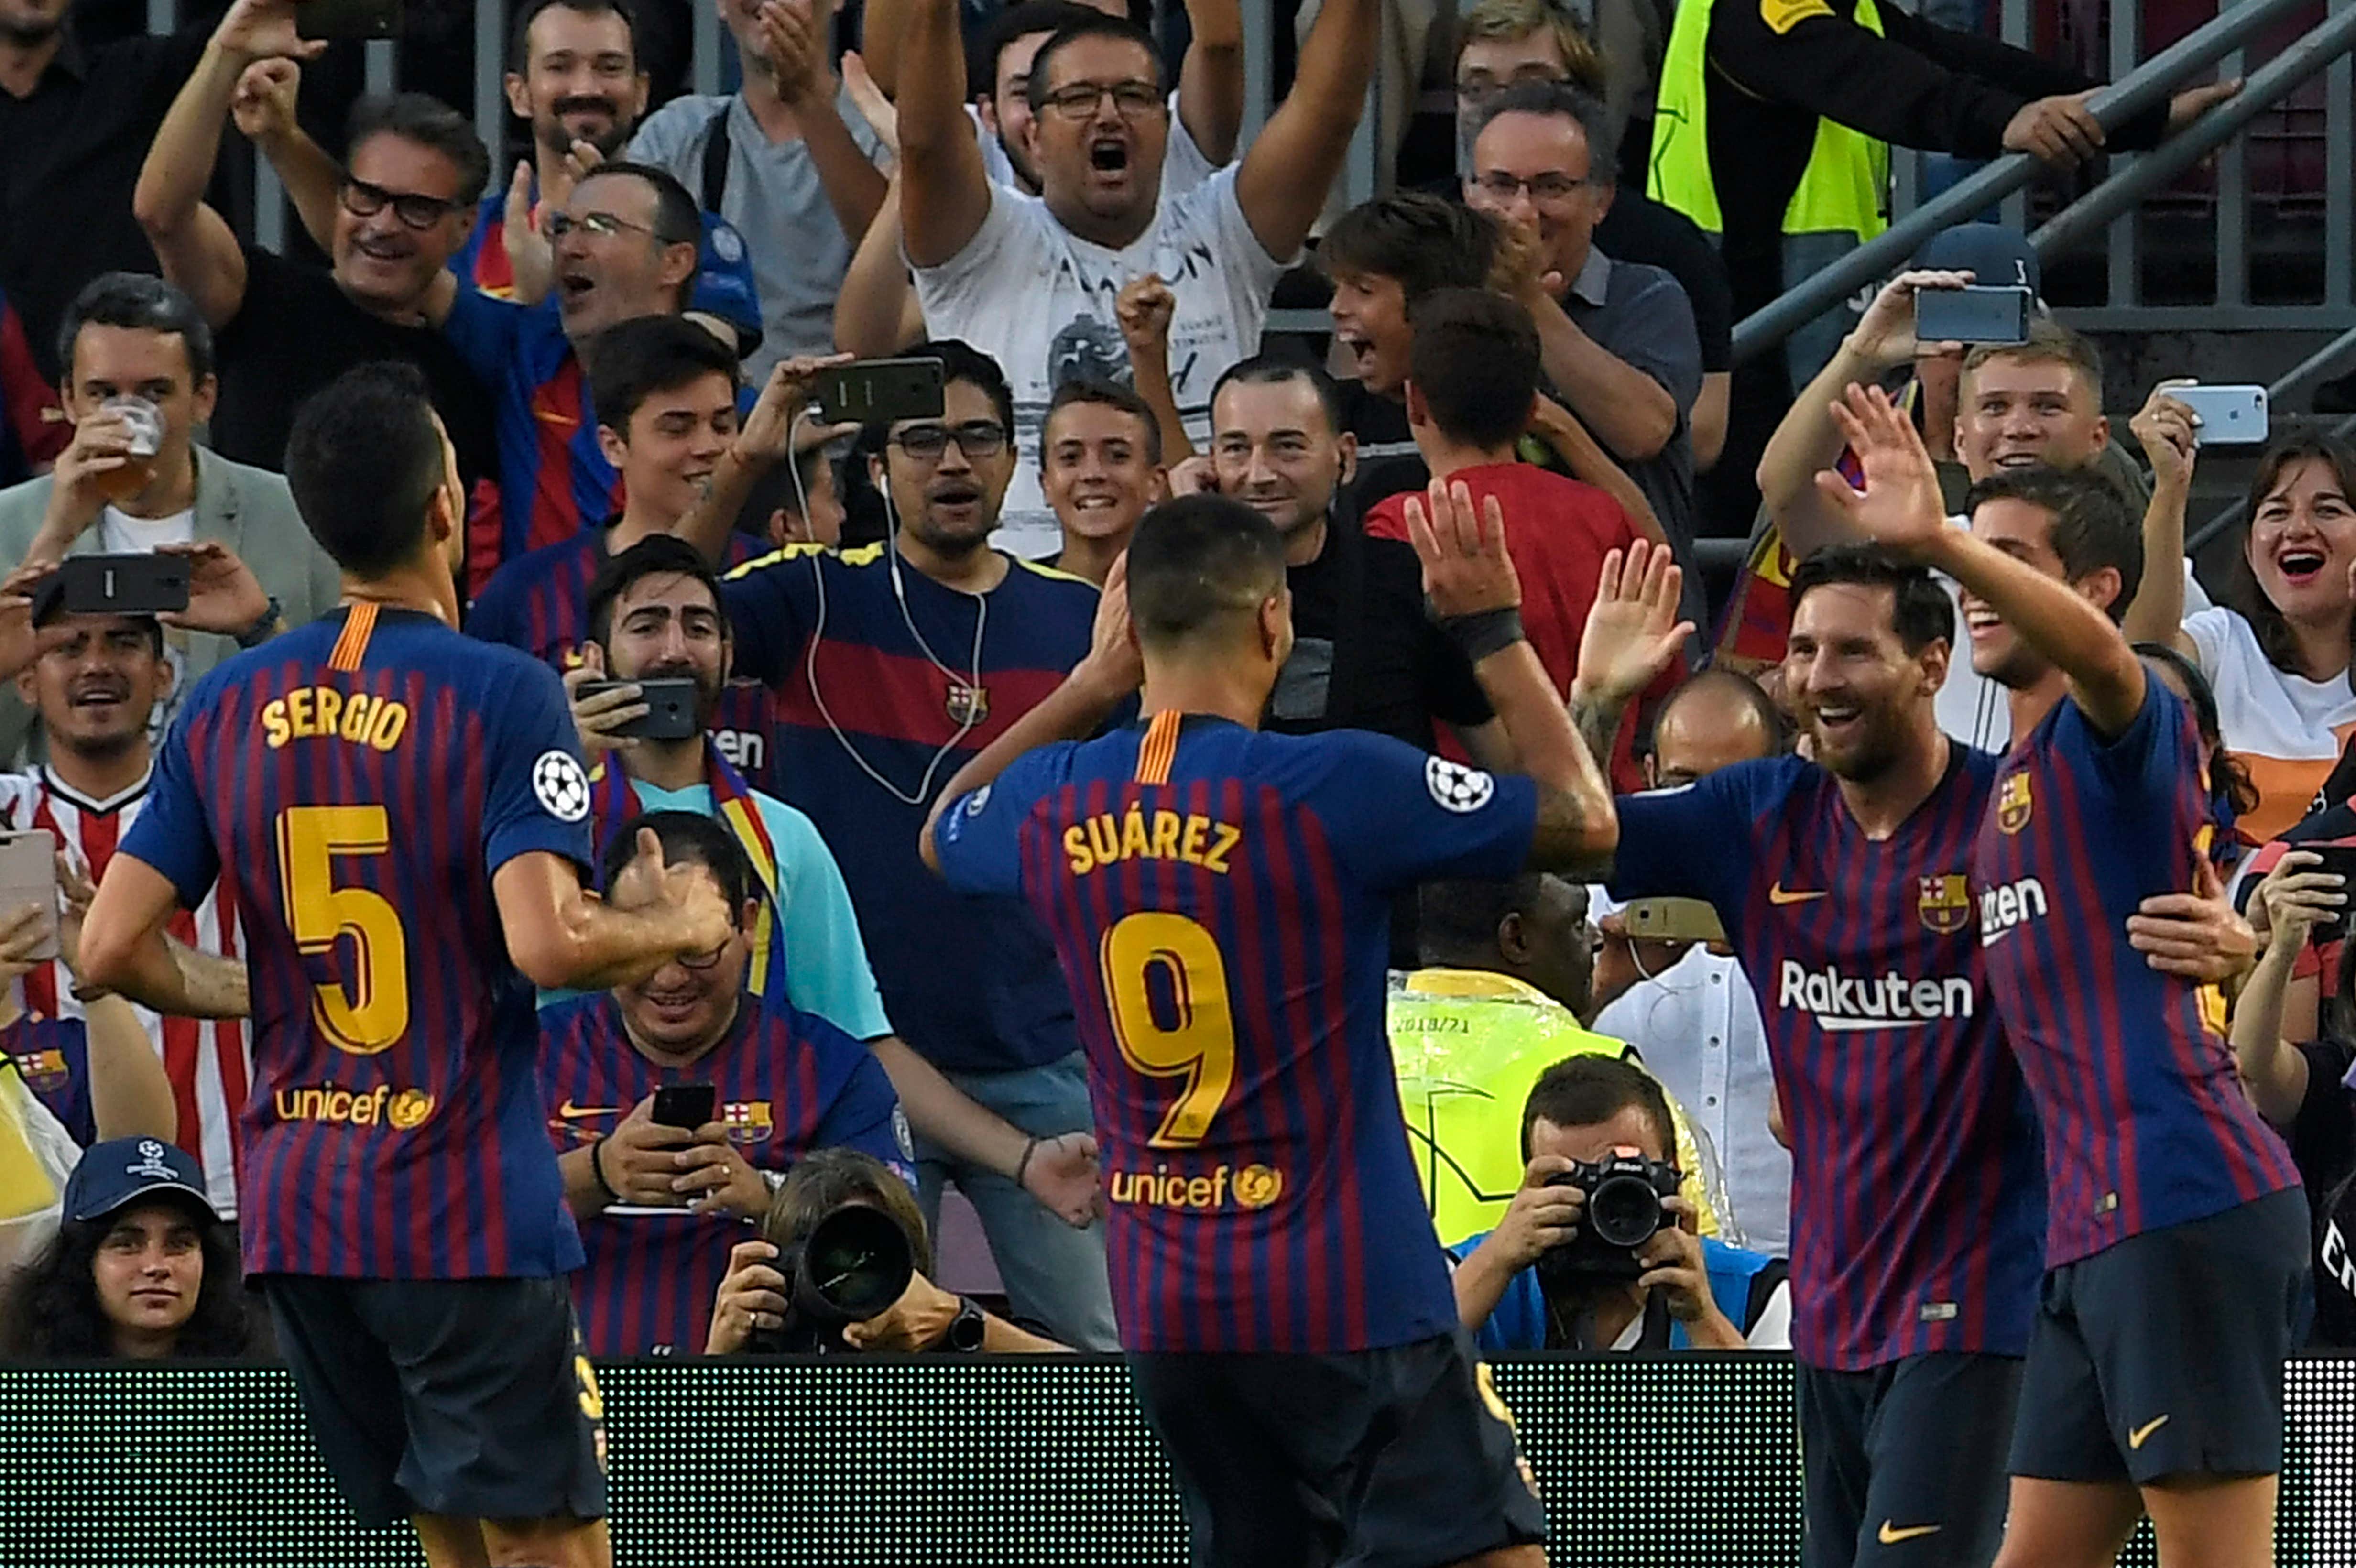 Barca và Messi đã có những thành công xuất sắc tại Champions League. Hình ảnh sẽ cho bạn thấy những khoảnh khắc đẹp nhất của anh ta trong giải đấu này, cũng như sự kết hợp hoàn hảo giữa Messi và đồng đội ở Barca.